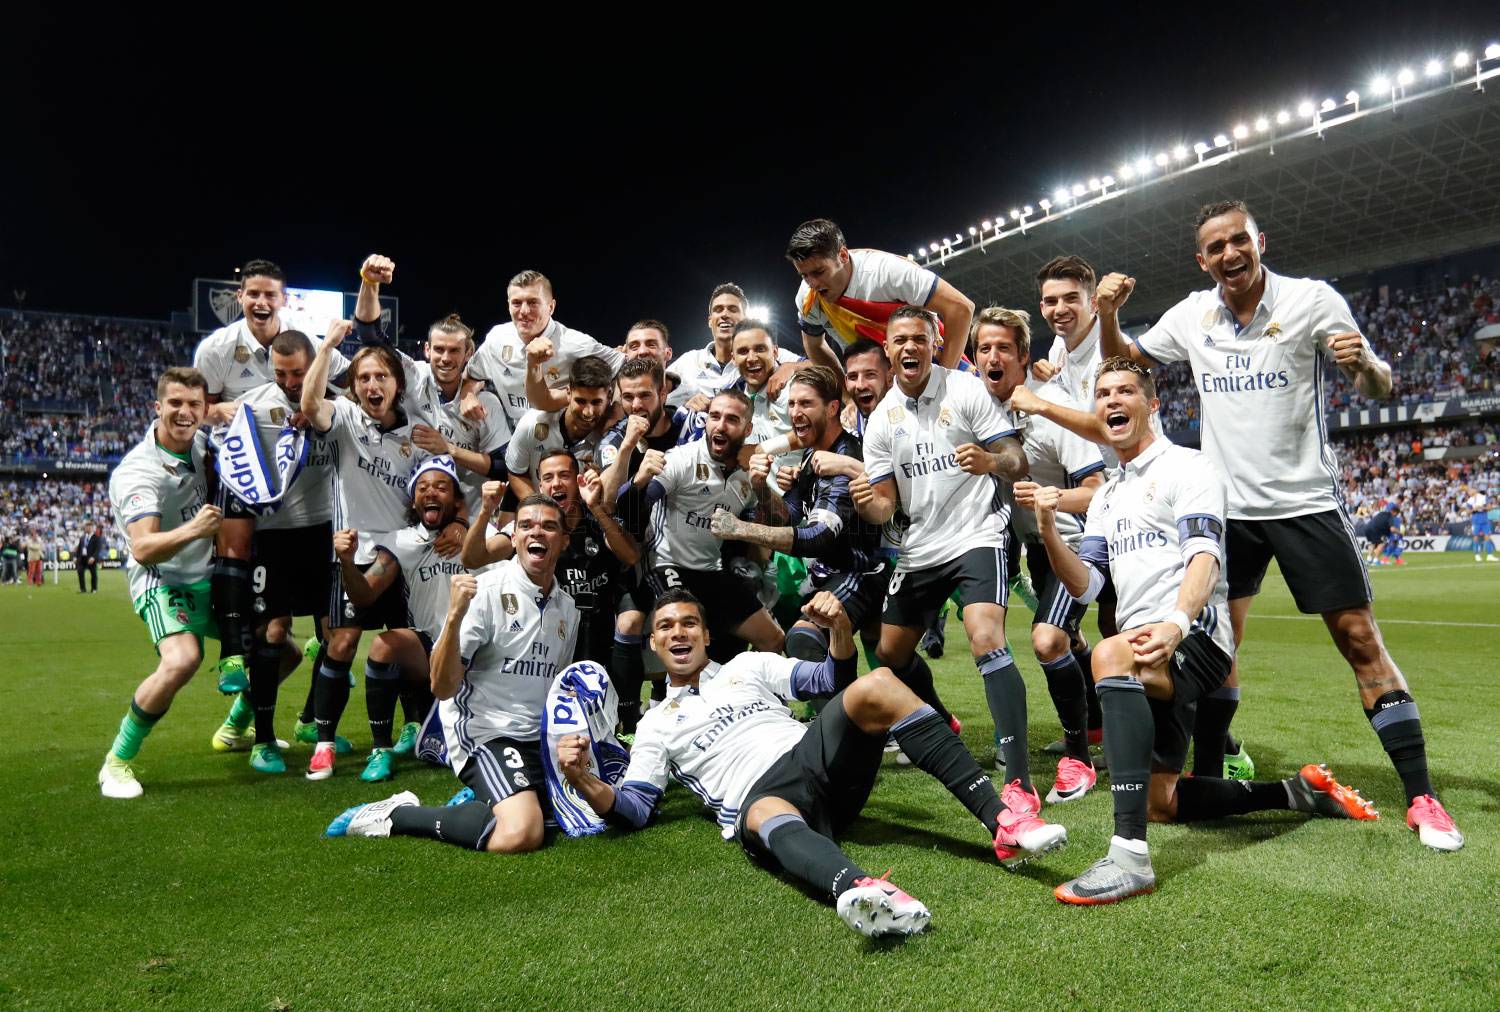 &#171;Реал Мадрид&#187; Выиграл Ла Лигу в 33 раз. ¡¡¡Campeones campeones ole ole ole!!!